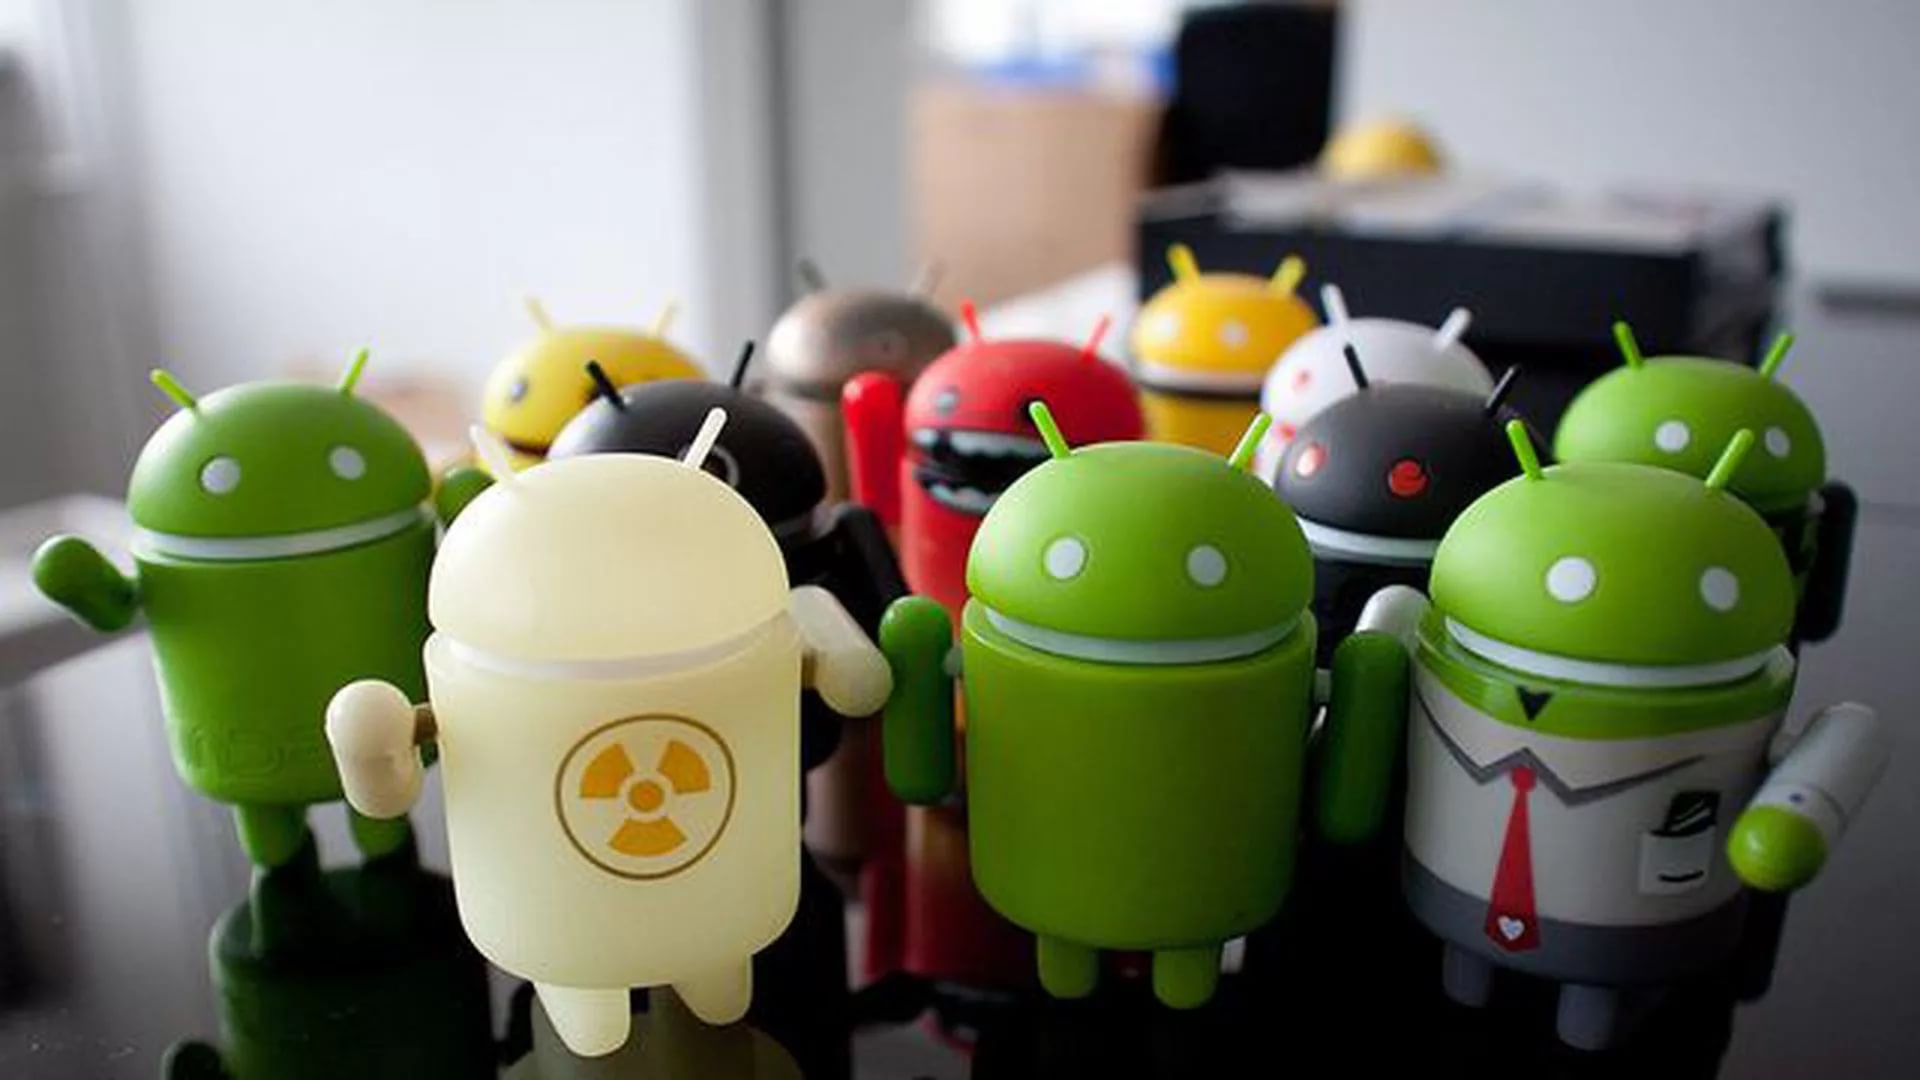 Android இல் விளம்பரங்களை எவ்வாறு முடக்கலாம் - ரூட் இல்லாத வழிகள்